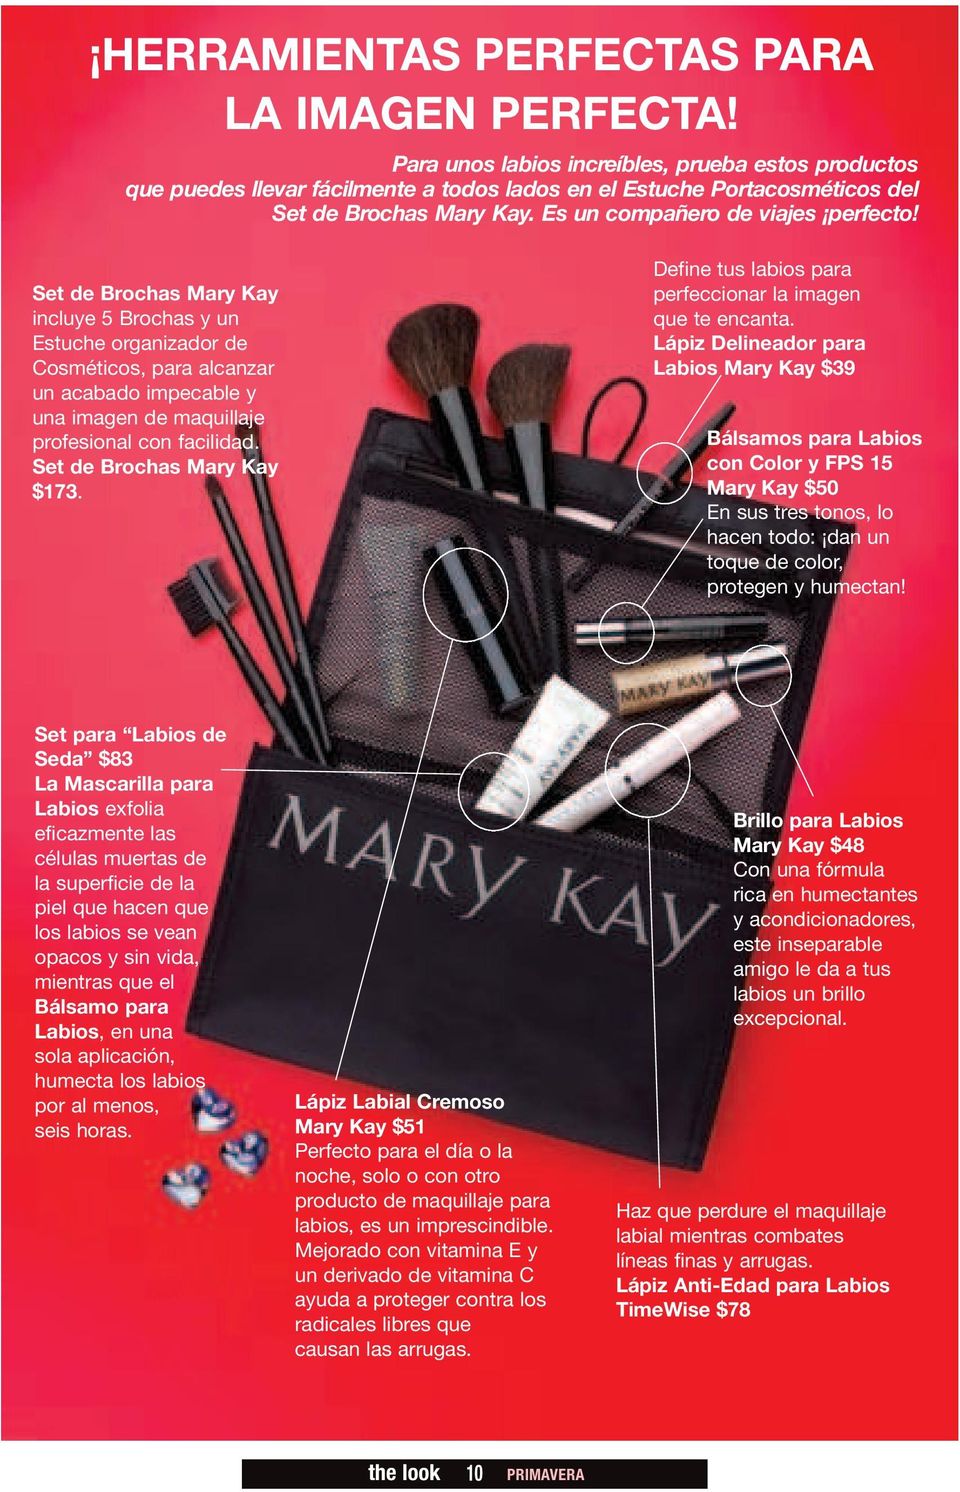 Set de Brochas Mary Kay incluye 5 Brochas y un Estuche organizador de Cosméticos, para alcanzar un acabado impecable y una imagen de maquillaje profesional con facilidad. Set de Brochas Mary Kay $173.